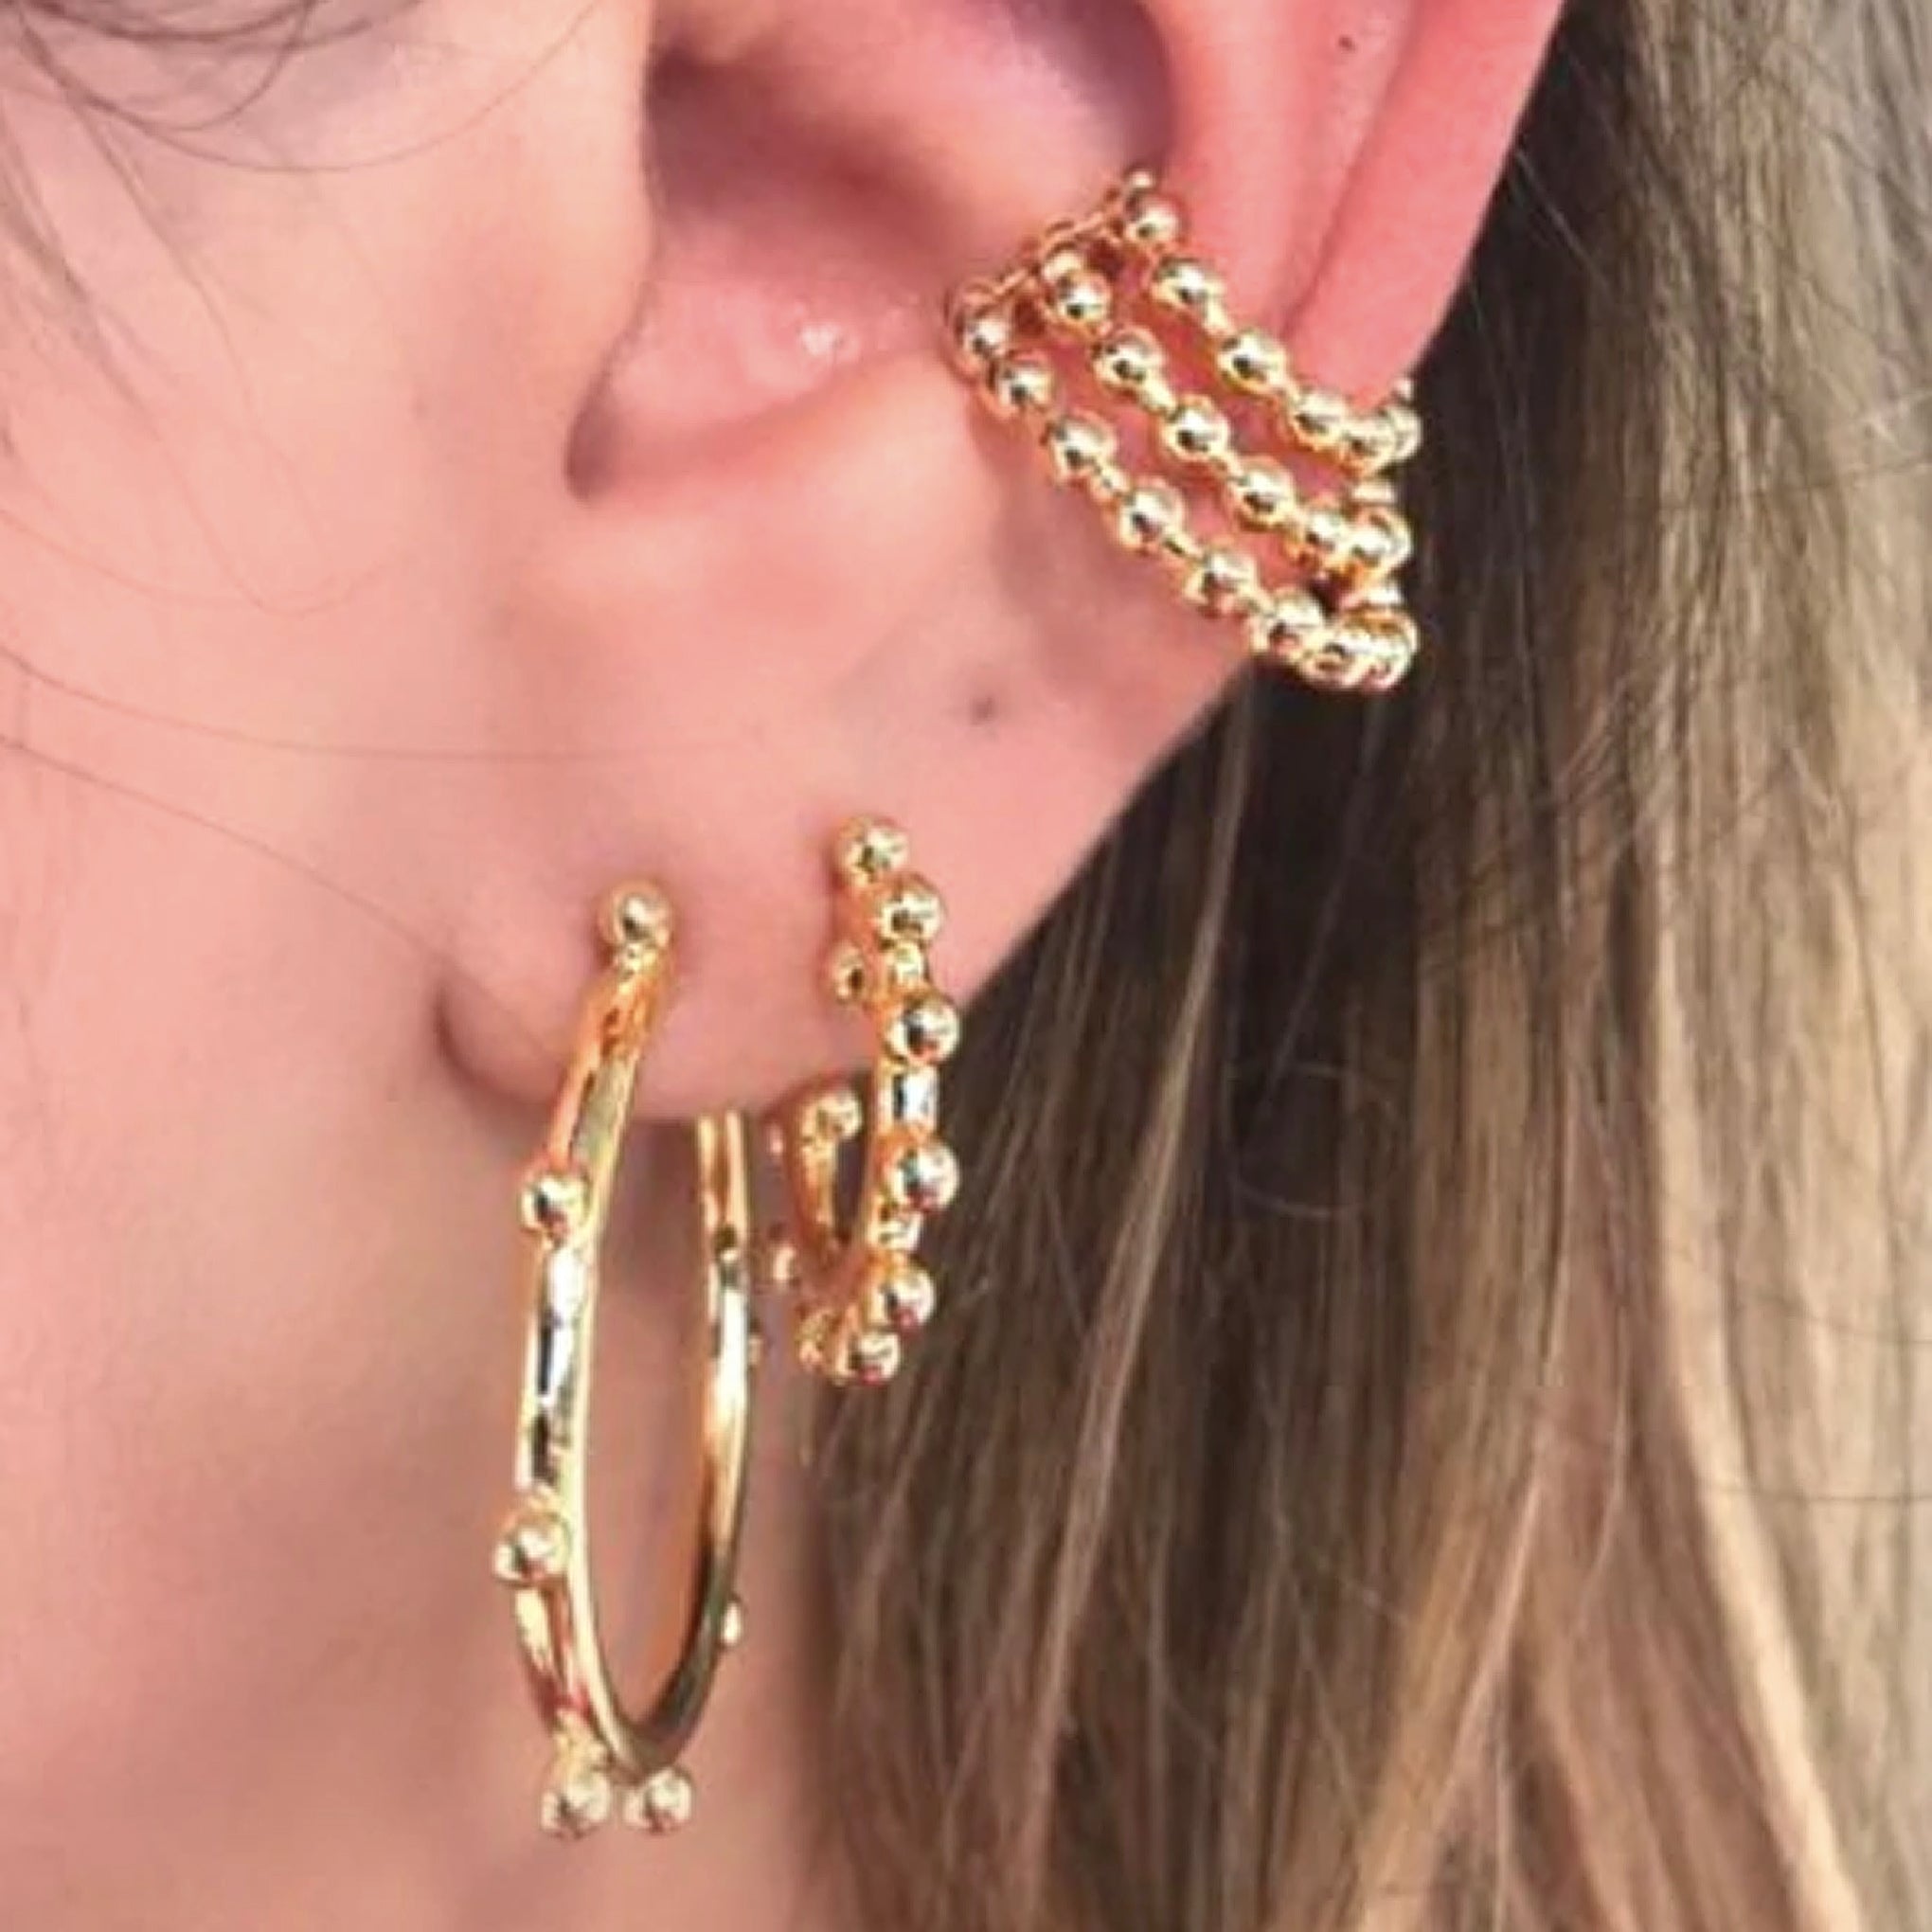 Sheila Fajl Talk To Me Ear Cuff Hoop Earrings in Polished Gold Plated